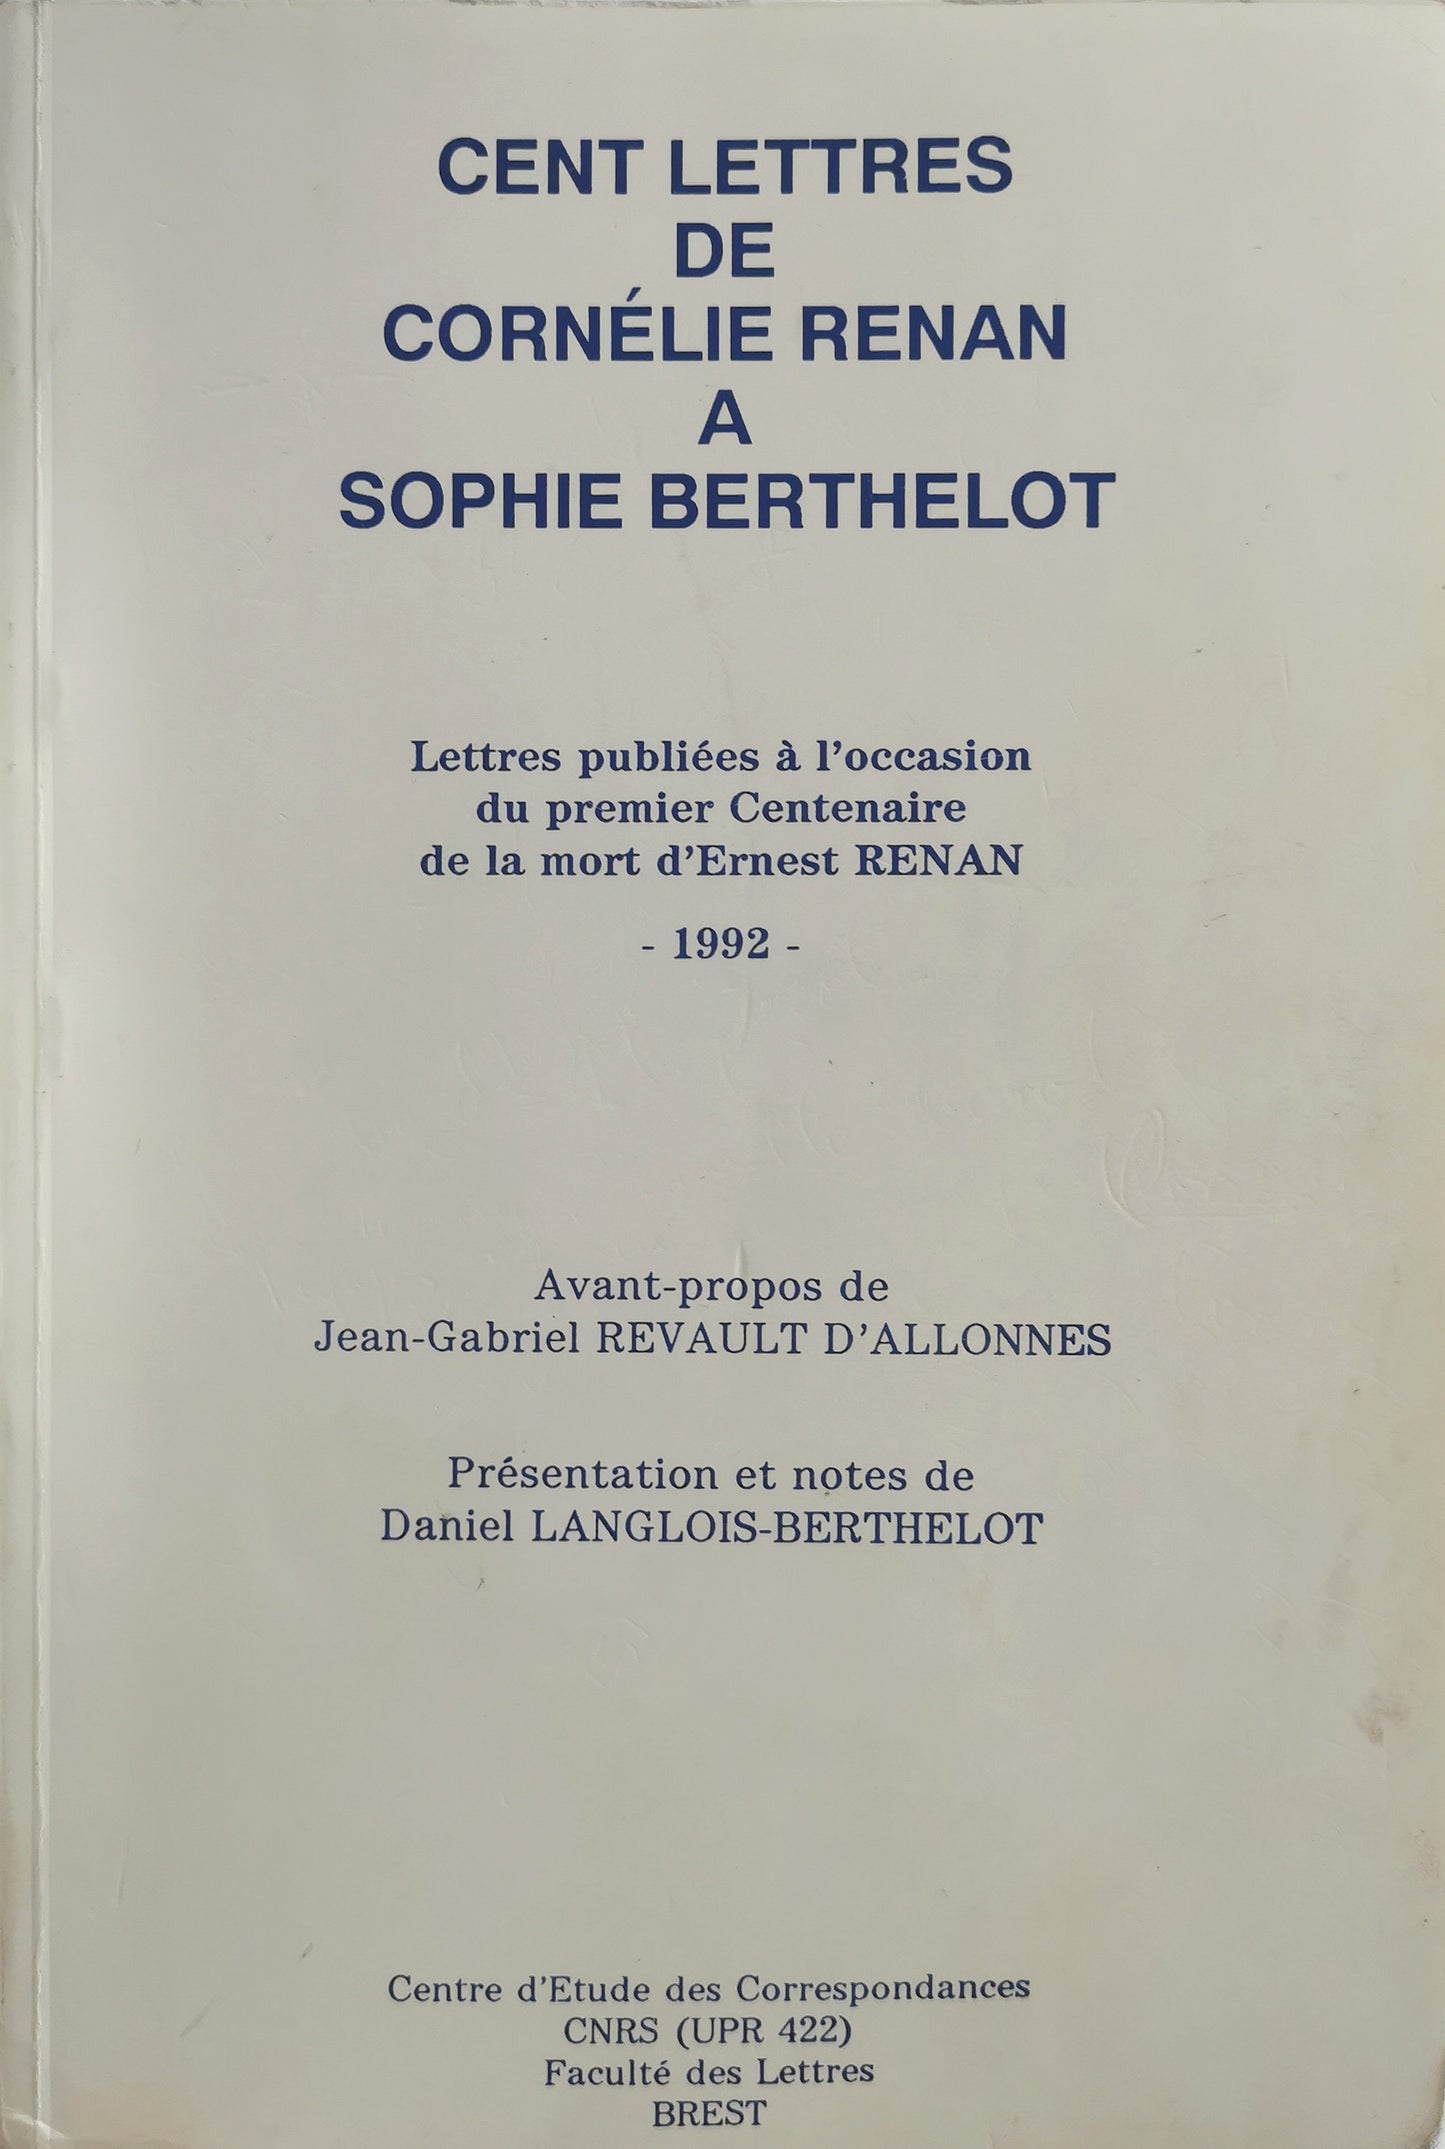 Cent lettres de Cornélie Renan à Sophie Bertheloy, avant-propos de Jean.-G. Revault d'Allonnes, présentation et notes de Daniel Langlois-Berthelot, Centre d'Etude des Correspondances, 1992.